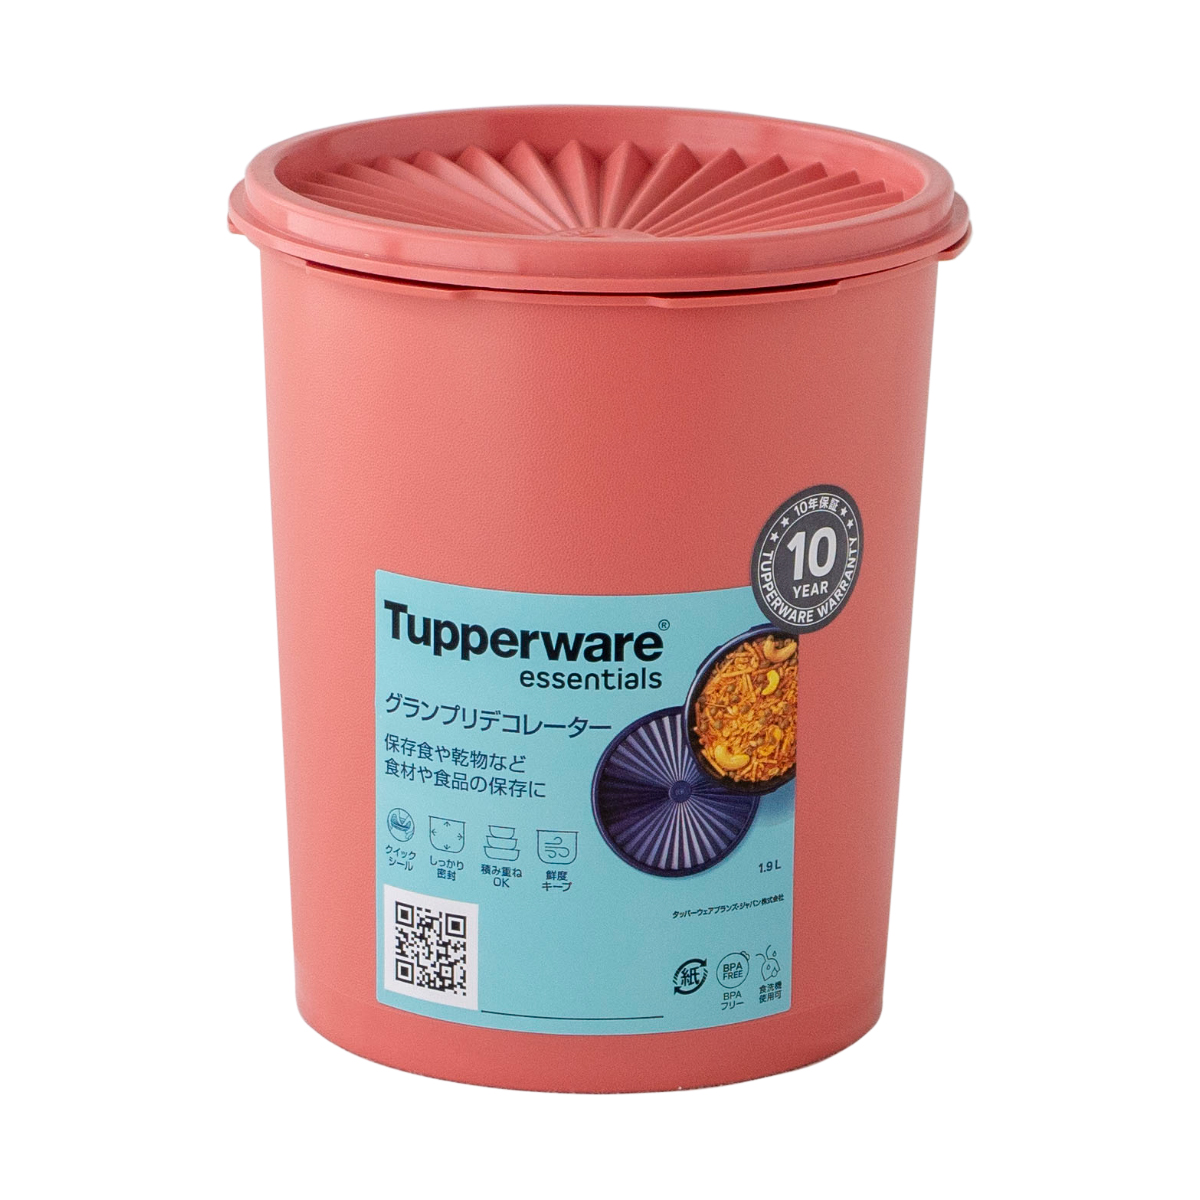 タッパーウェア Tupperware グランプリデコレーター M 1900ml 密封 密閉 保存容器 タッパー 食洗機対応 ストッカー 10年保証